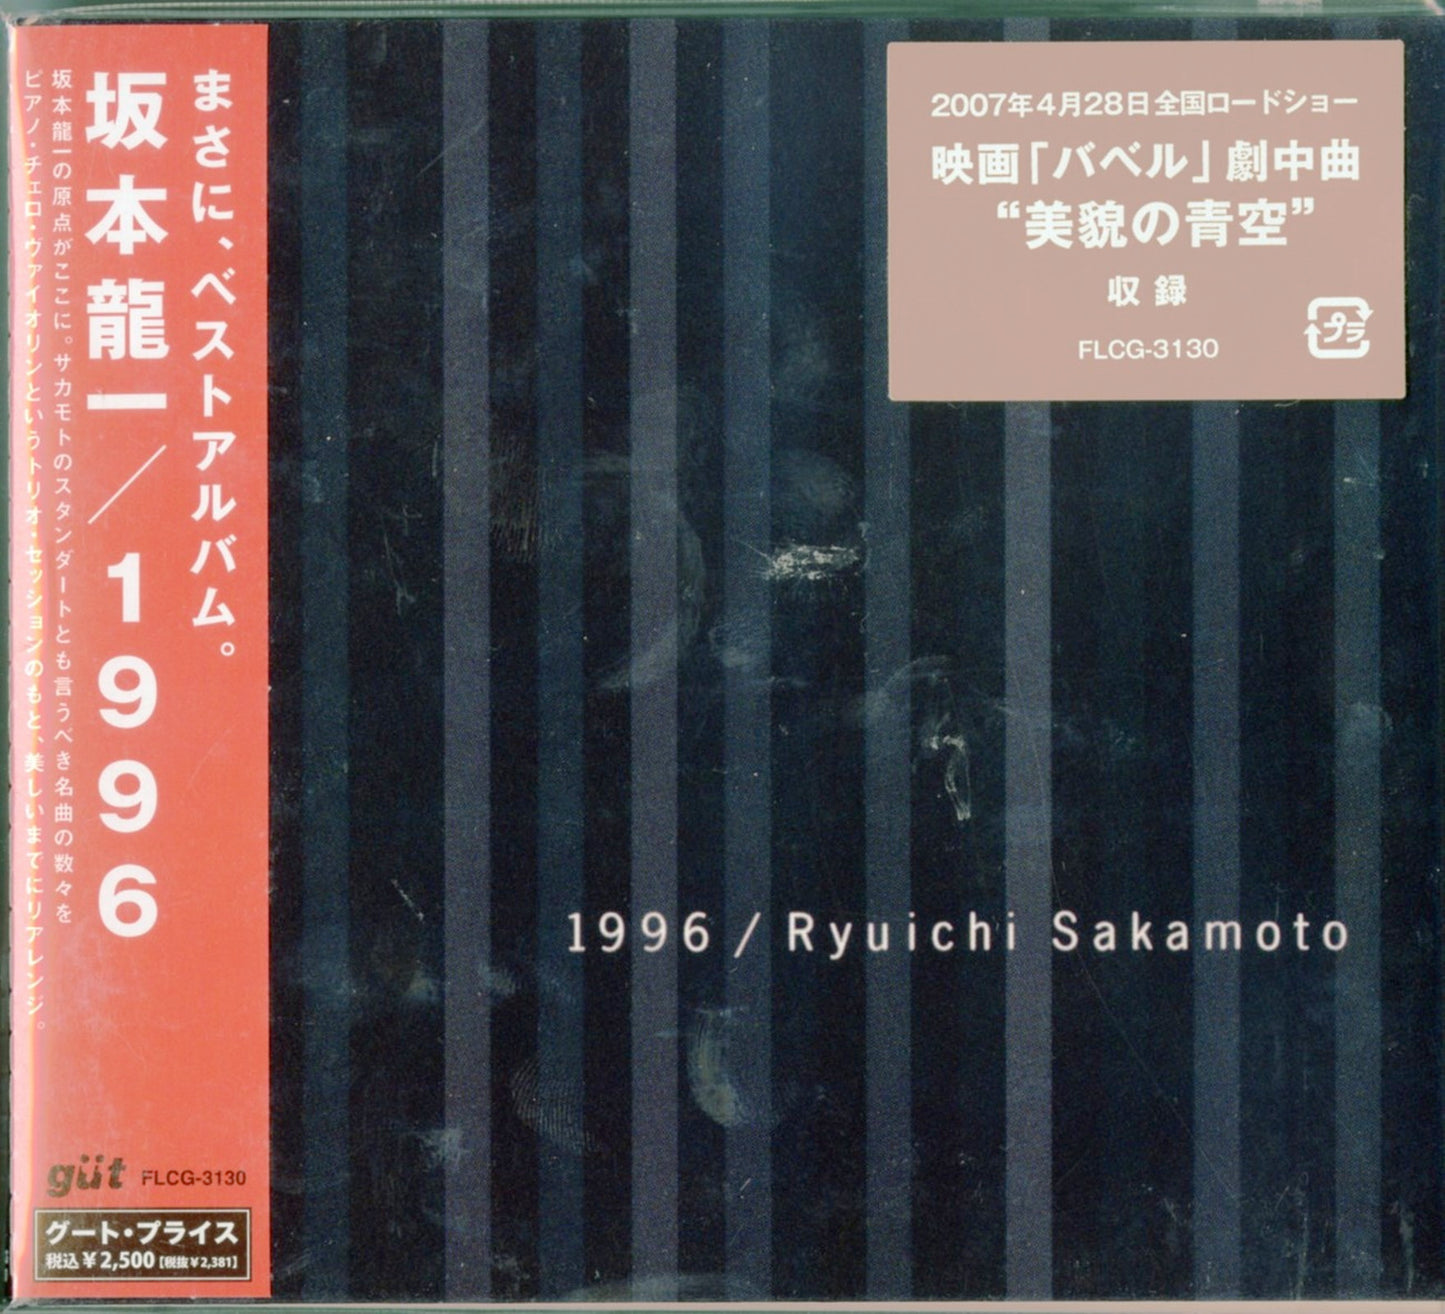 Ryuichi Sakamoto -1996 - Japan CD